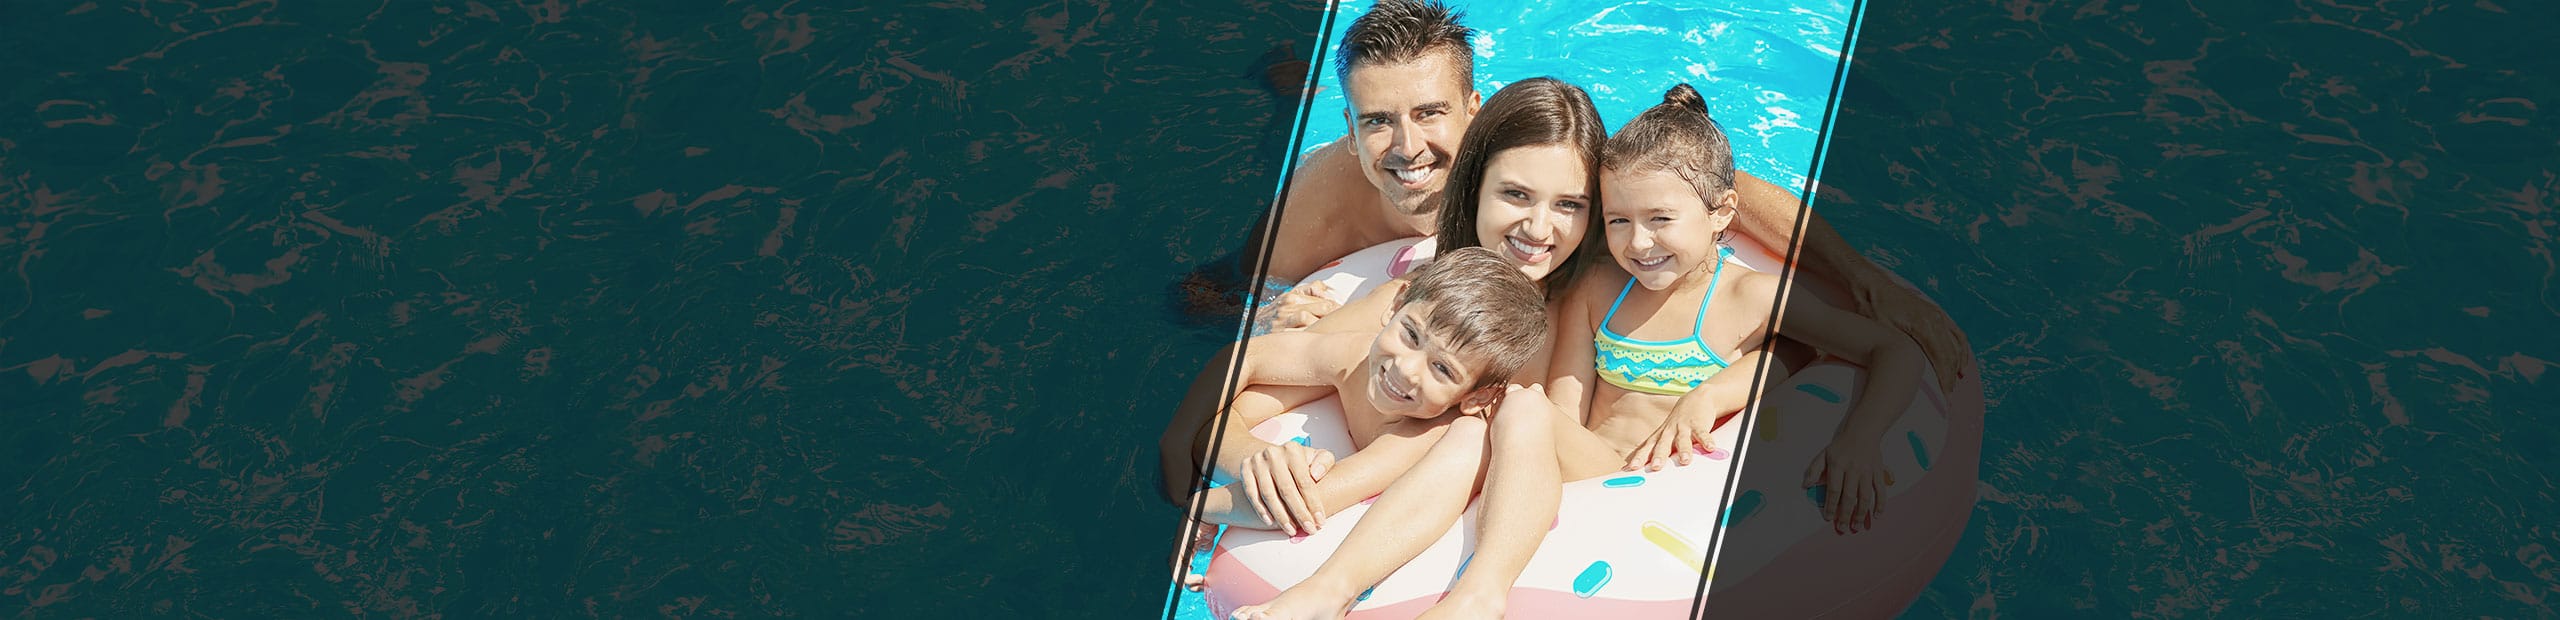 BCHL Happy Family In Pool Slider